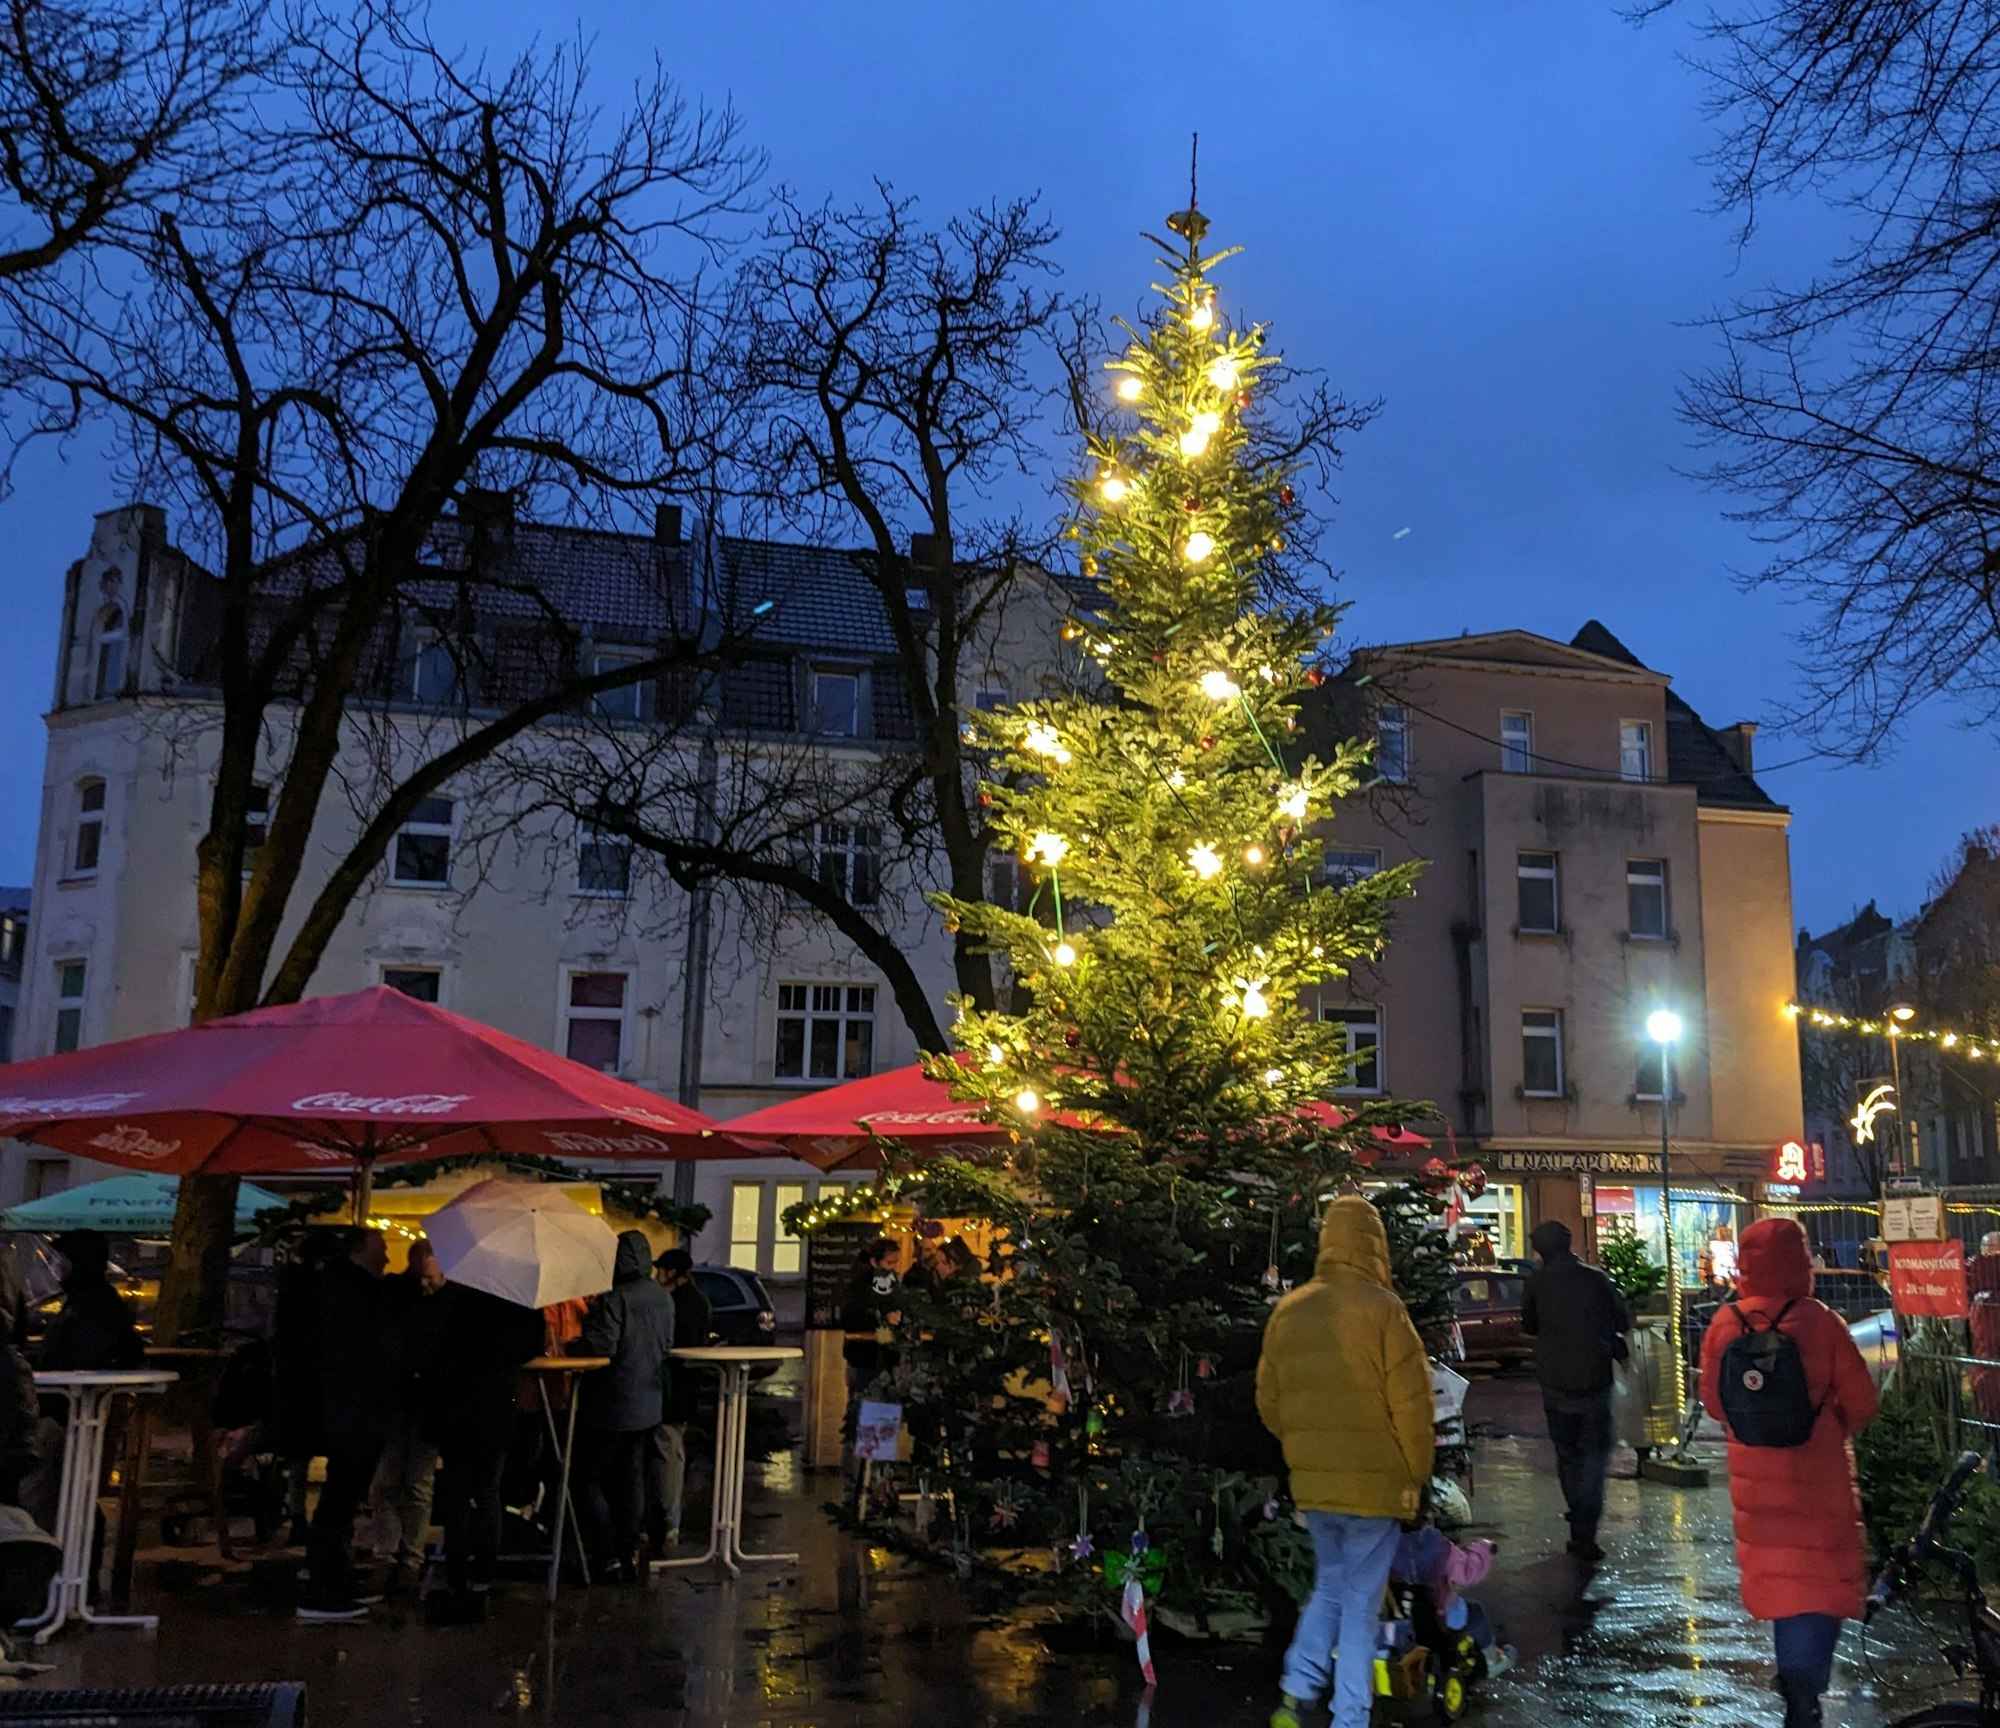 Weihnachtsmarkt in Neuehrenfeld.